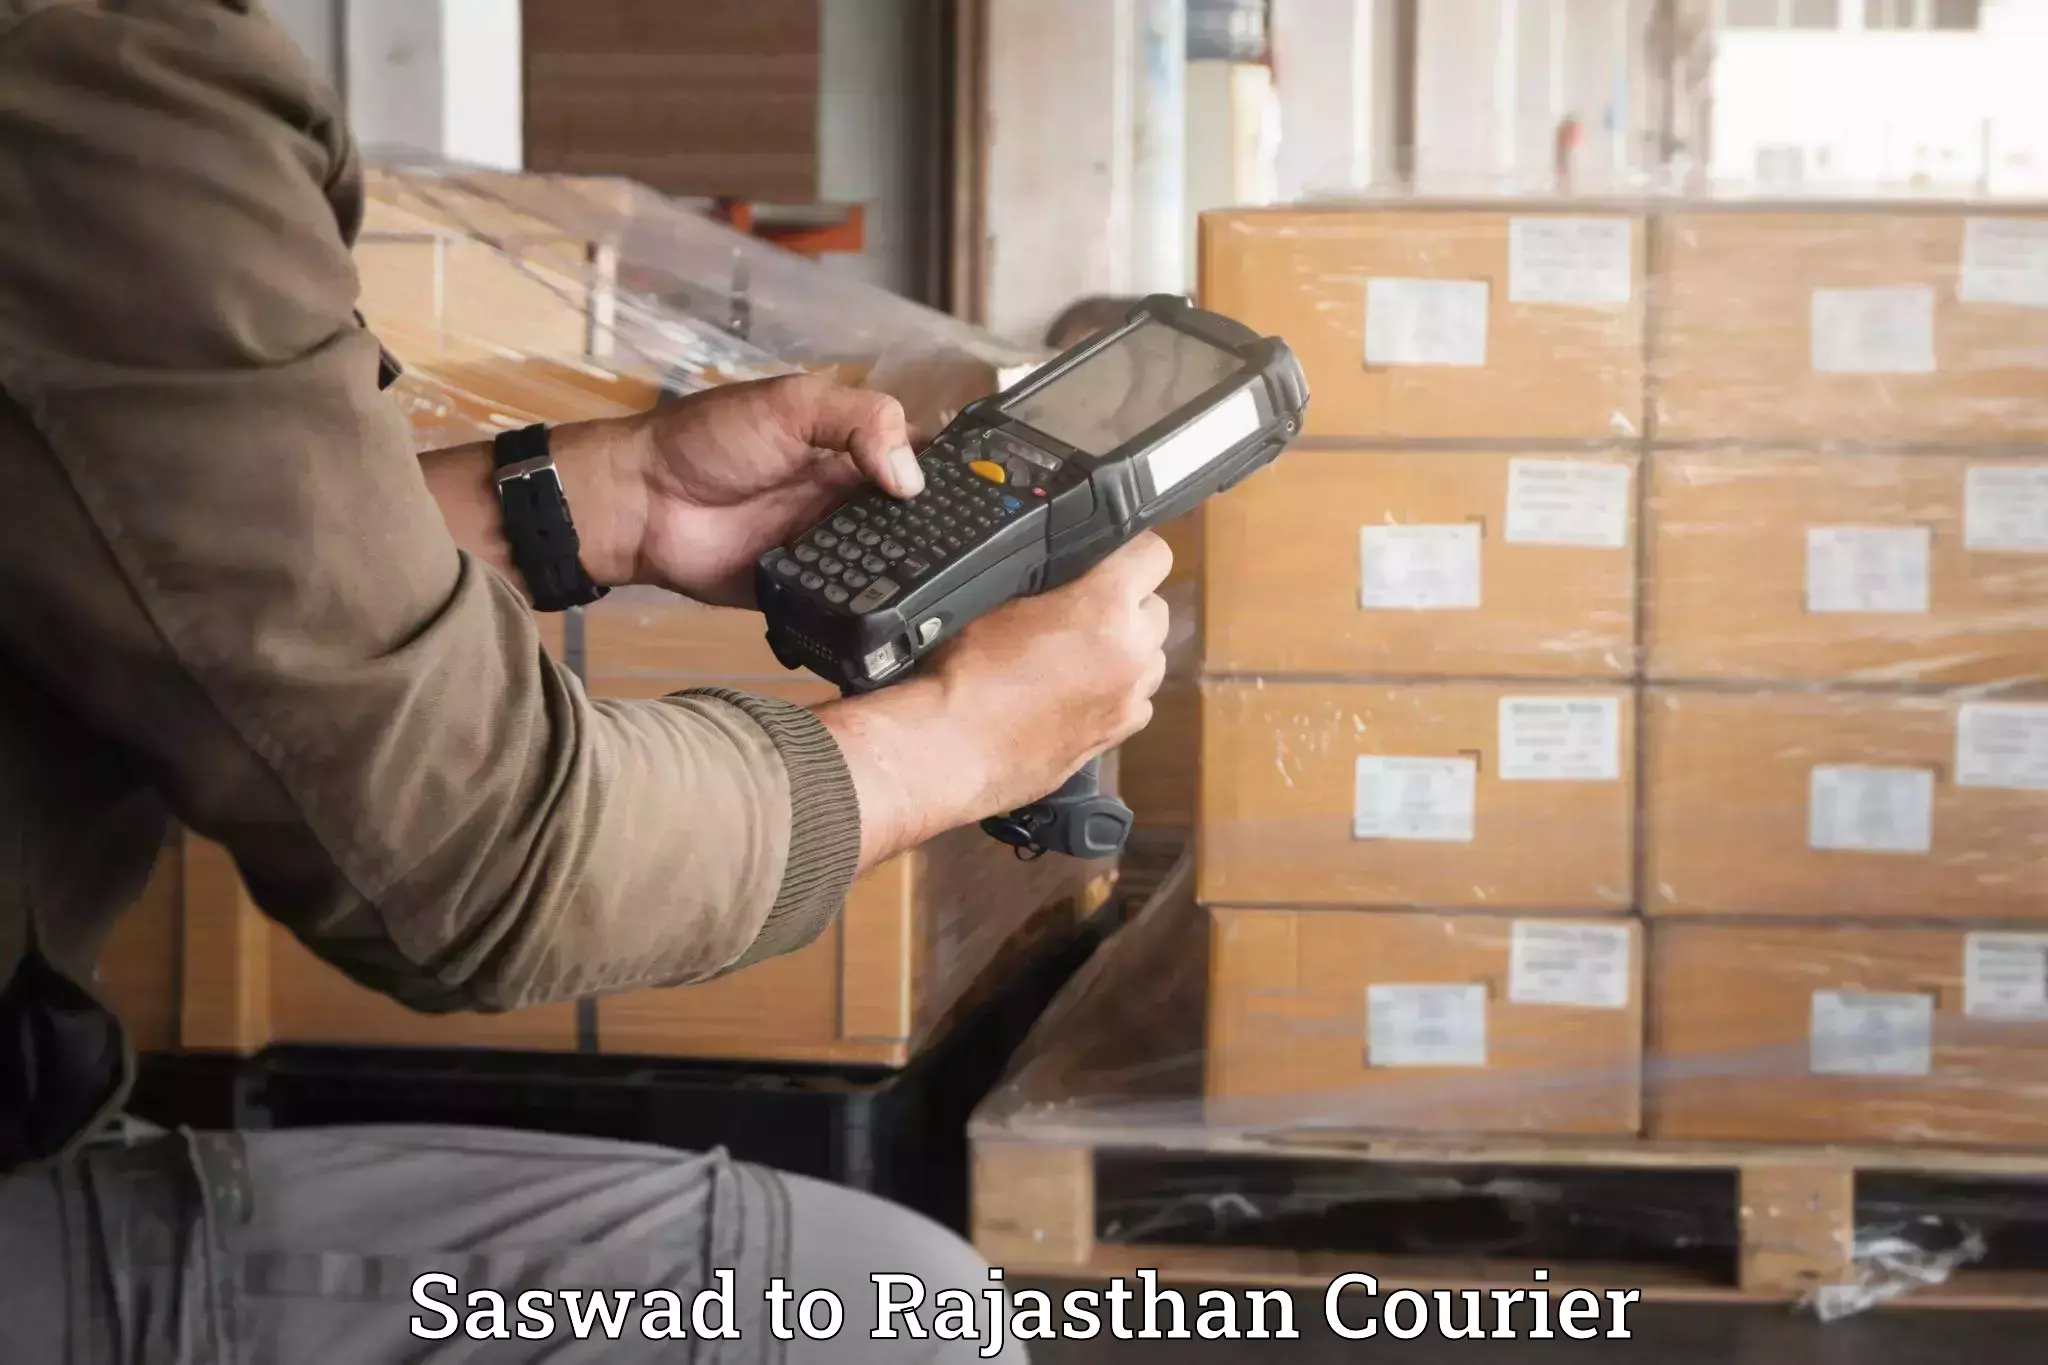 Luggage delivery app Saswad to Chhoti Sadri